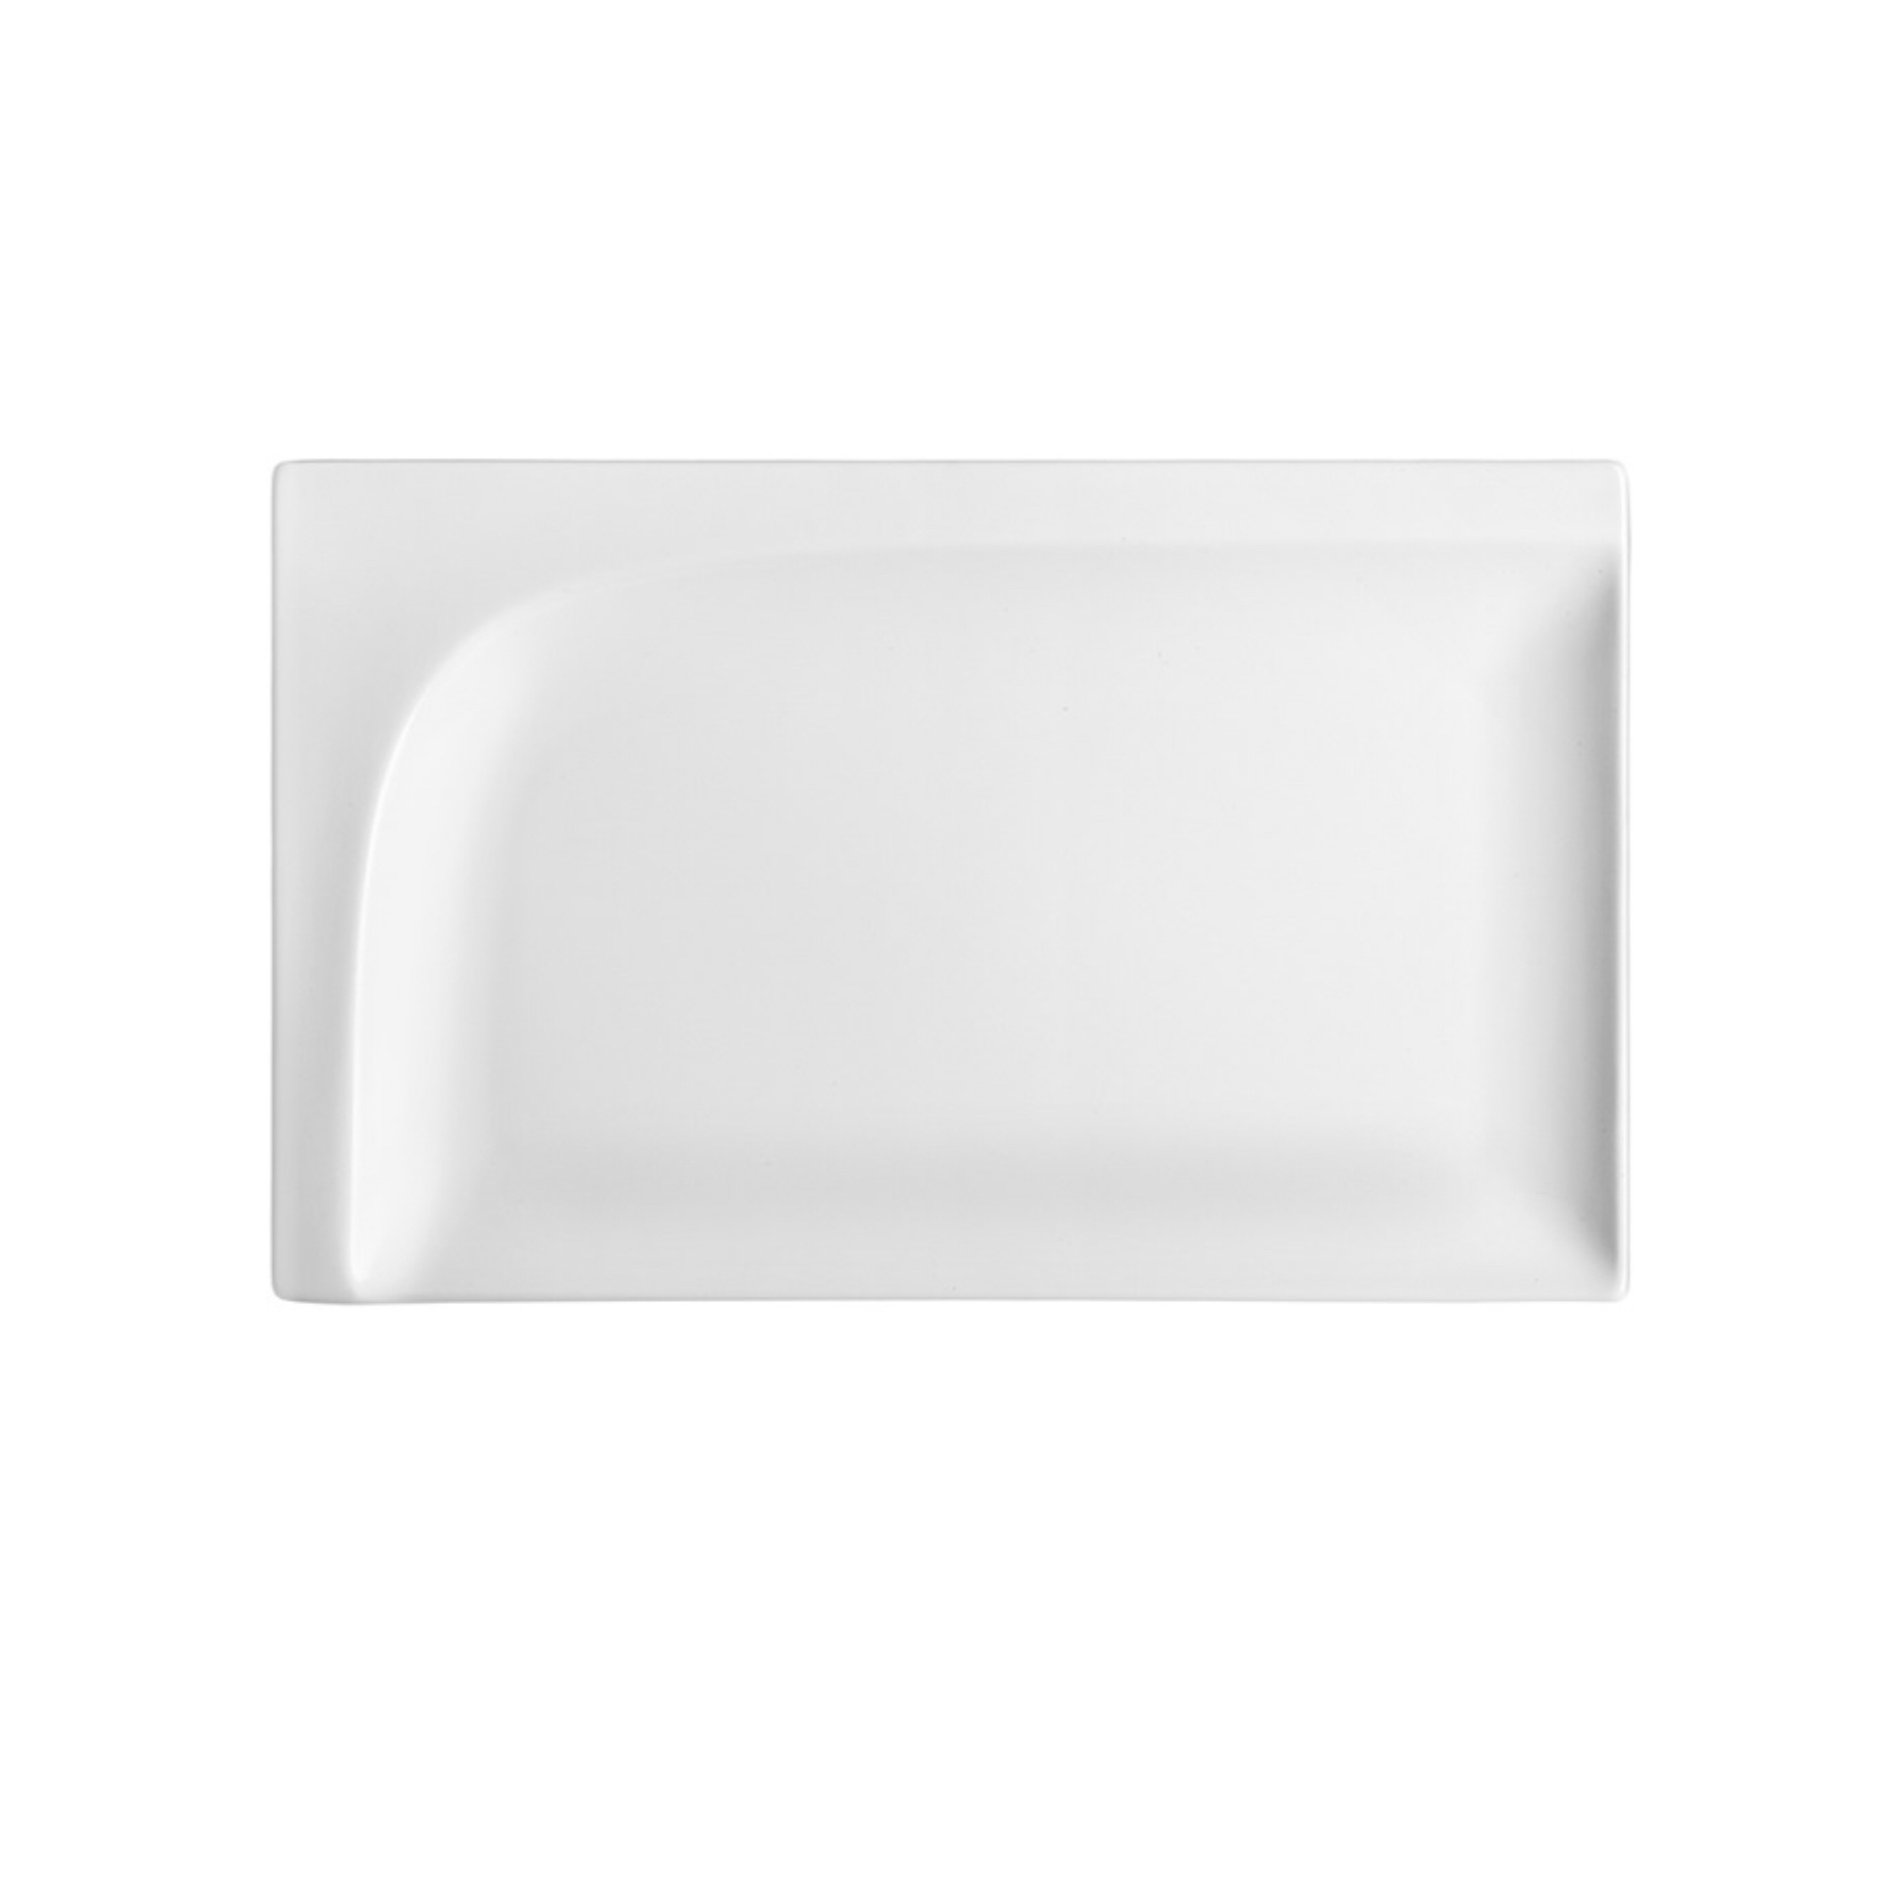 AMBITION Monaco 25,5 x 16 cm bílý - porcelánový talíř